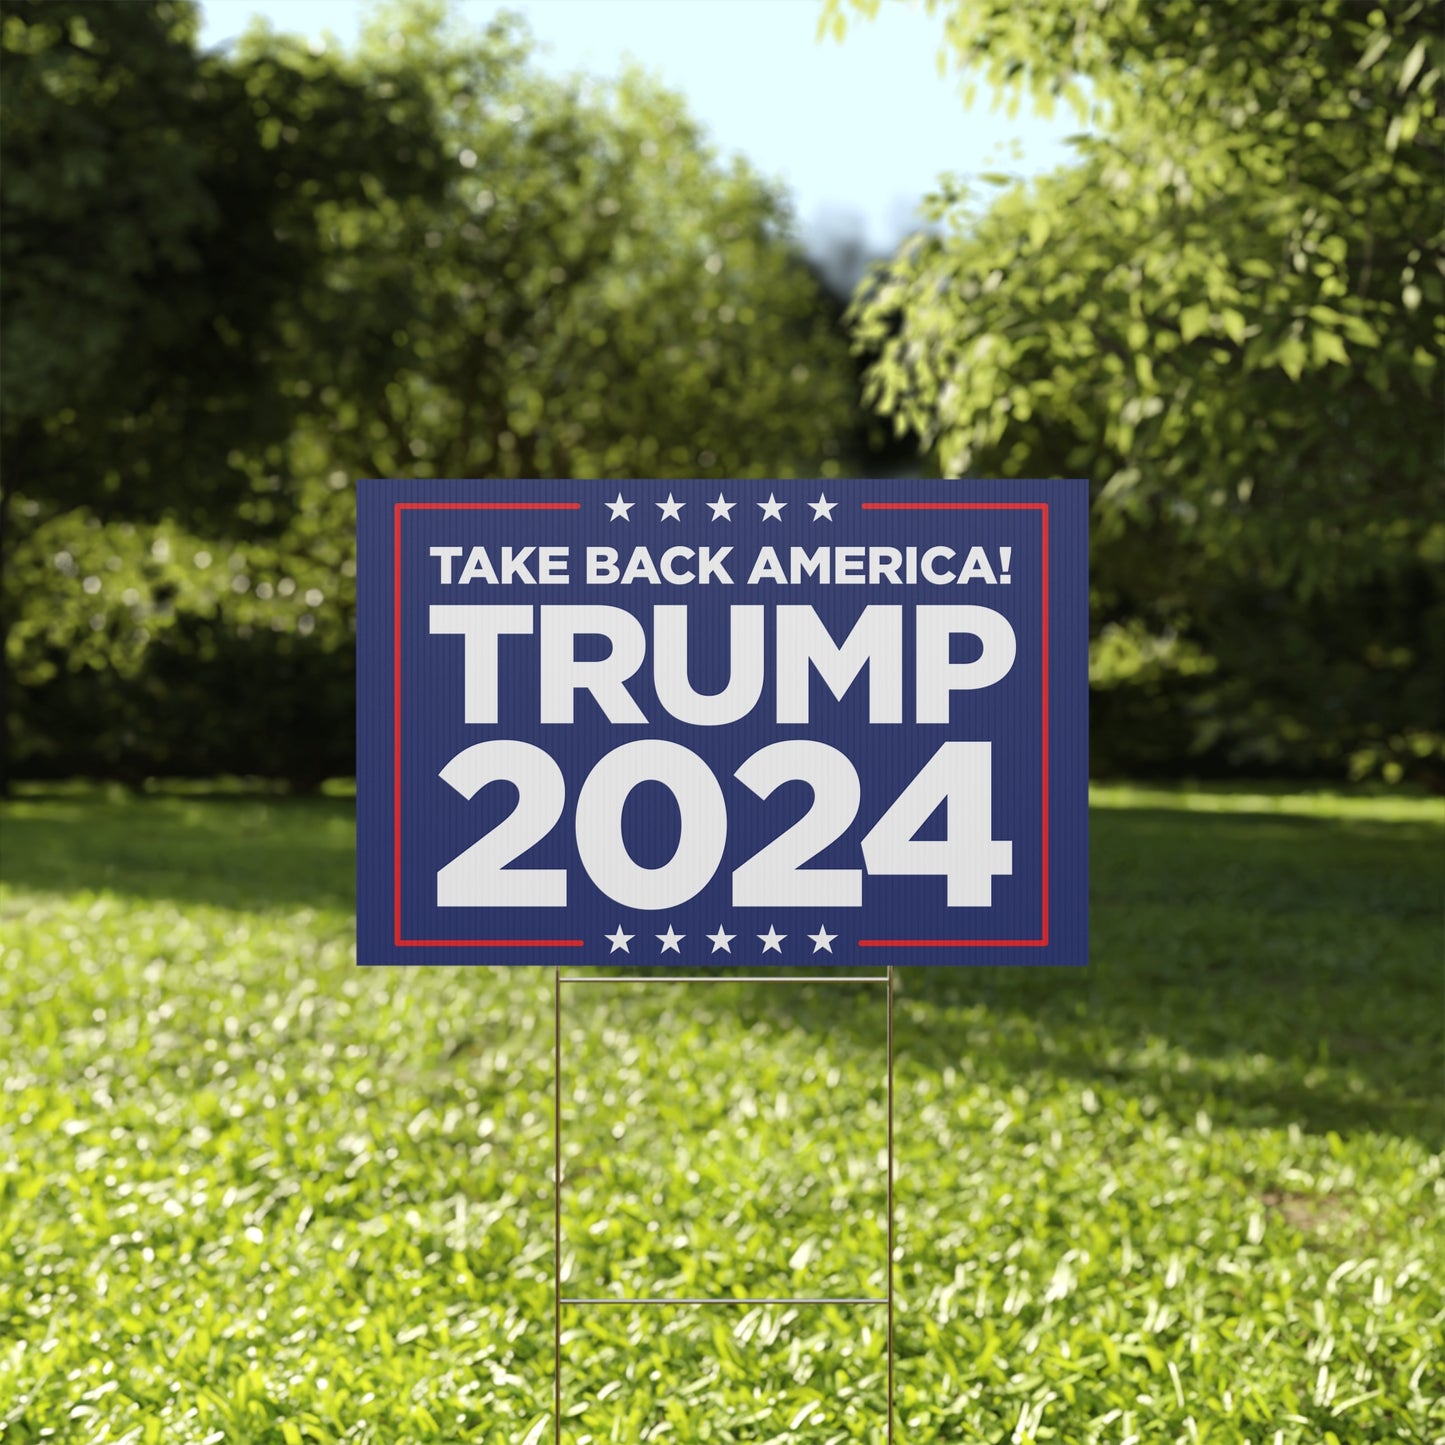 Take Back America Trump 2024 Yard Sign